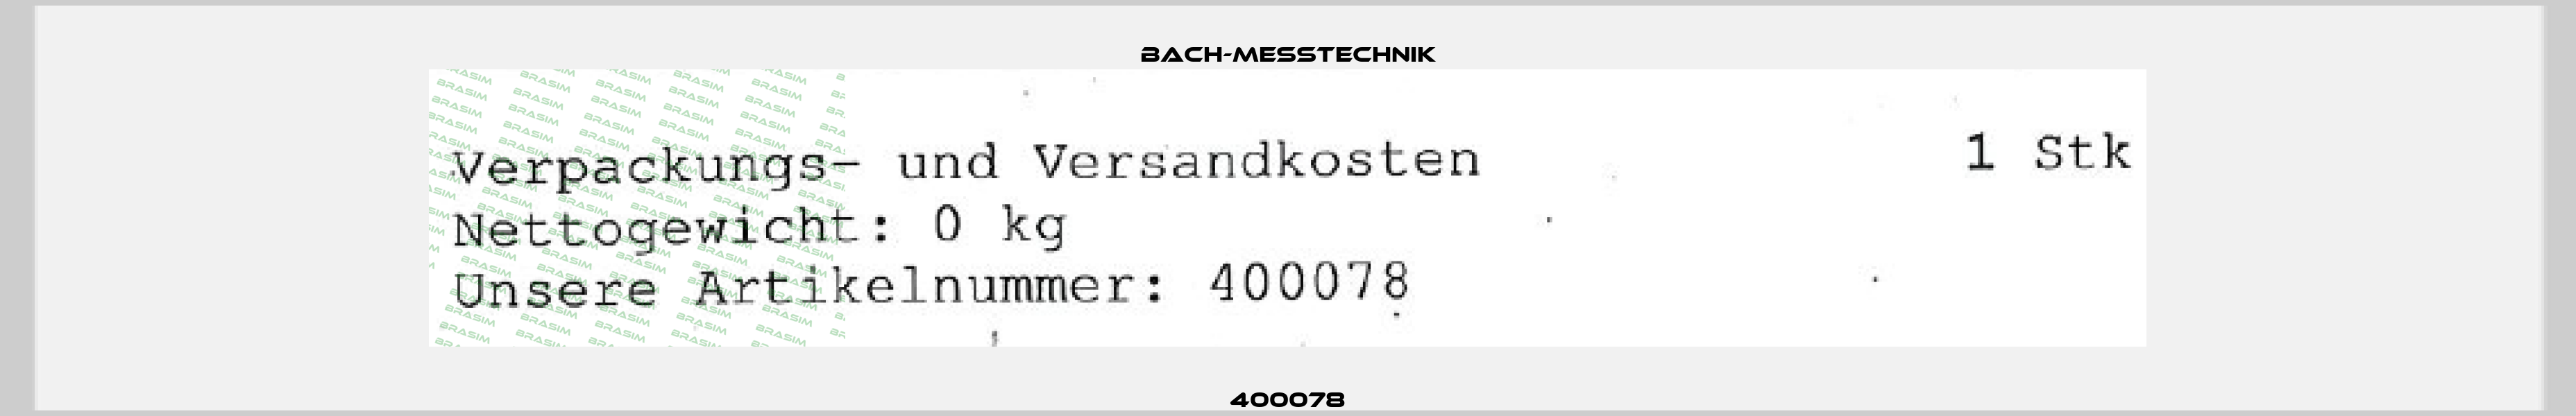 400078 Bach-messtechnik